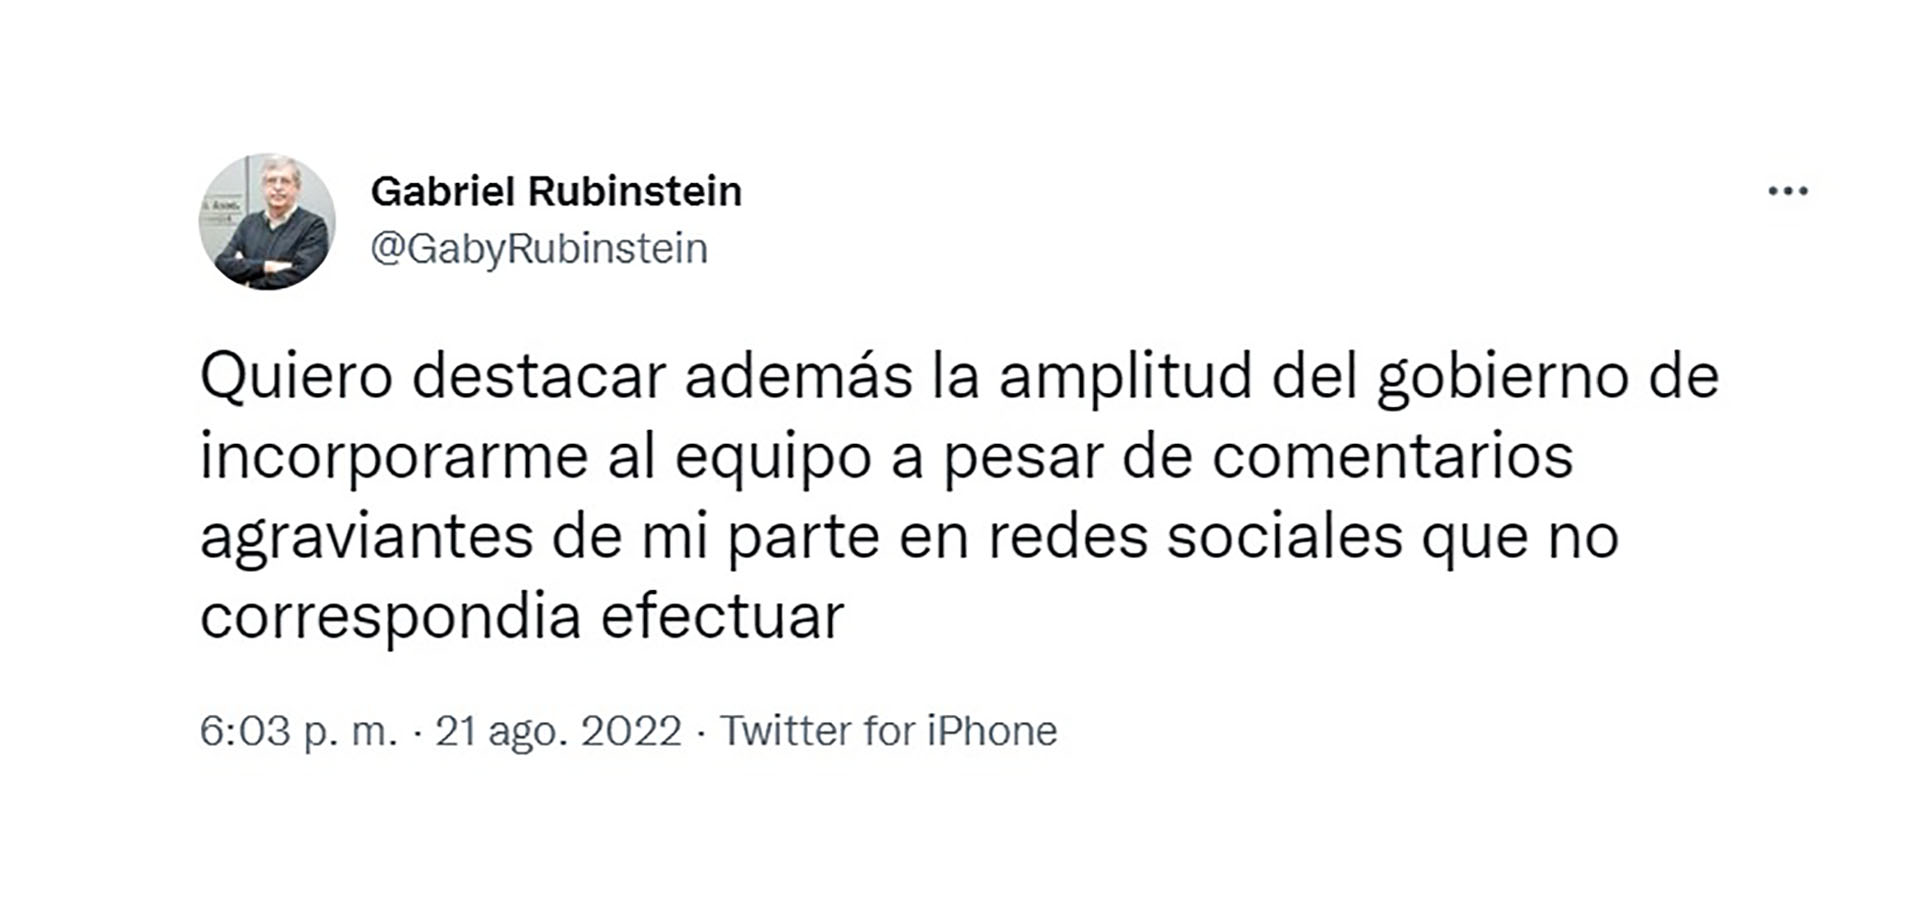 Rubinstein y un "mea culpa" por sus tuits contra la vicepresidenta Cristina Kirchner